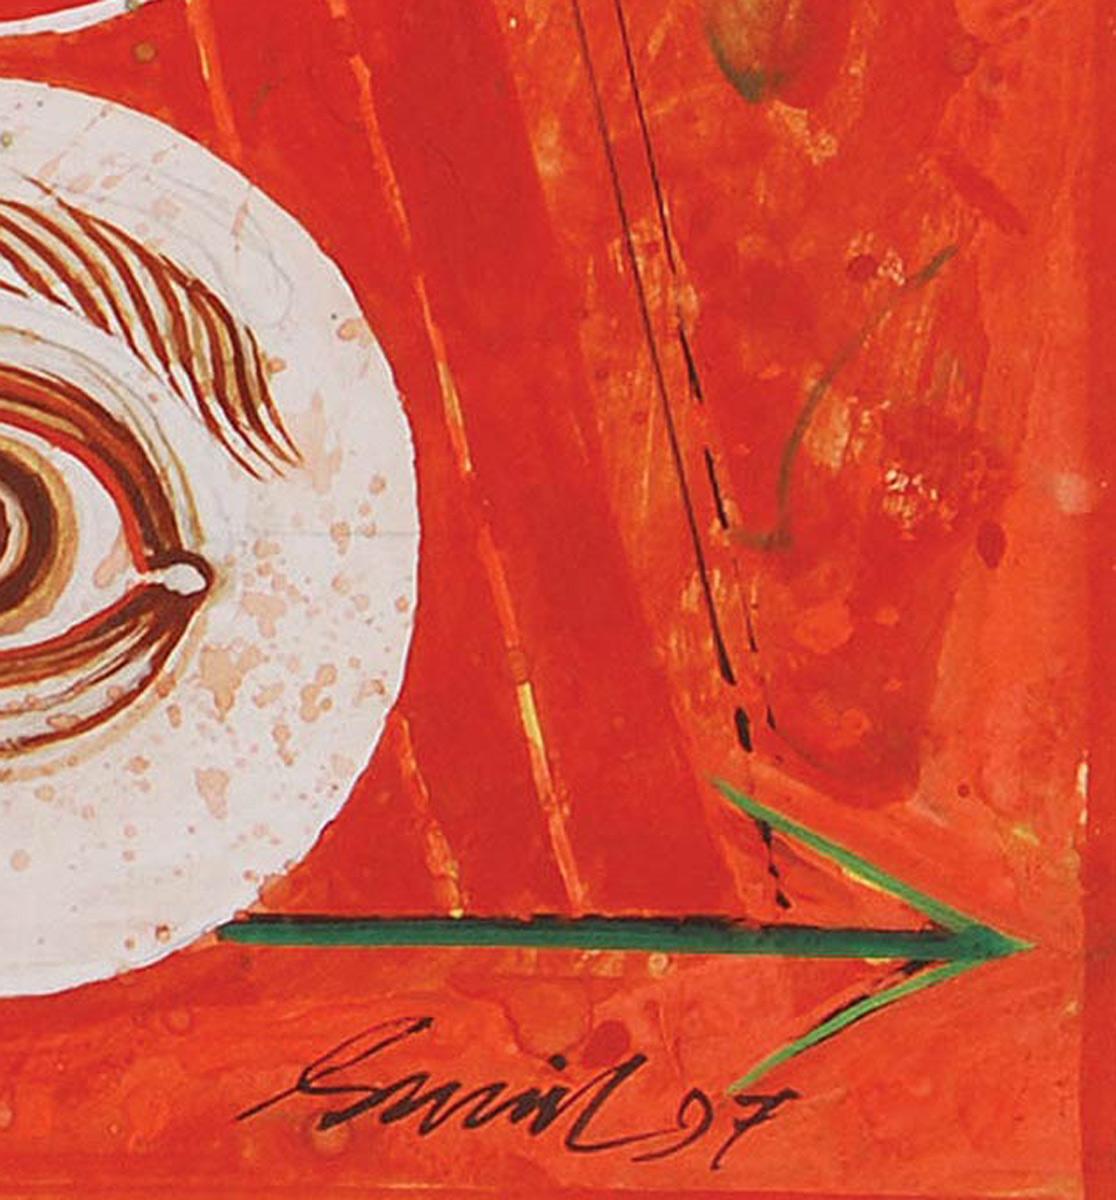 Durga 97, technique mixte sur panneau, rouge, jaune, vert par l'artiste indien « En stock » en vente 2